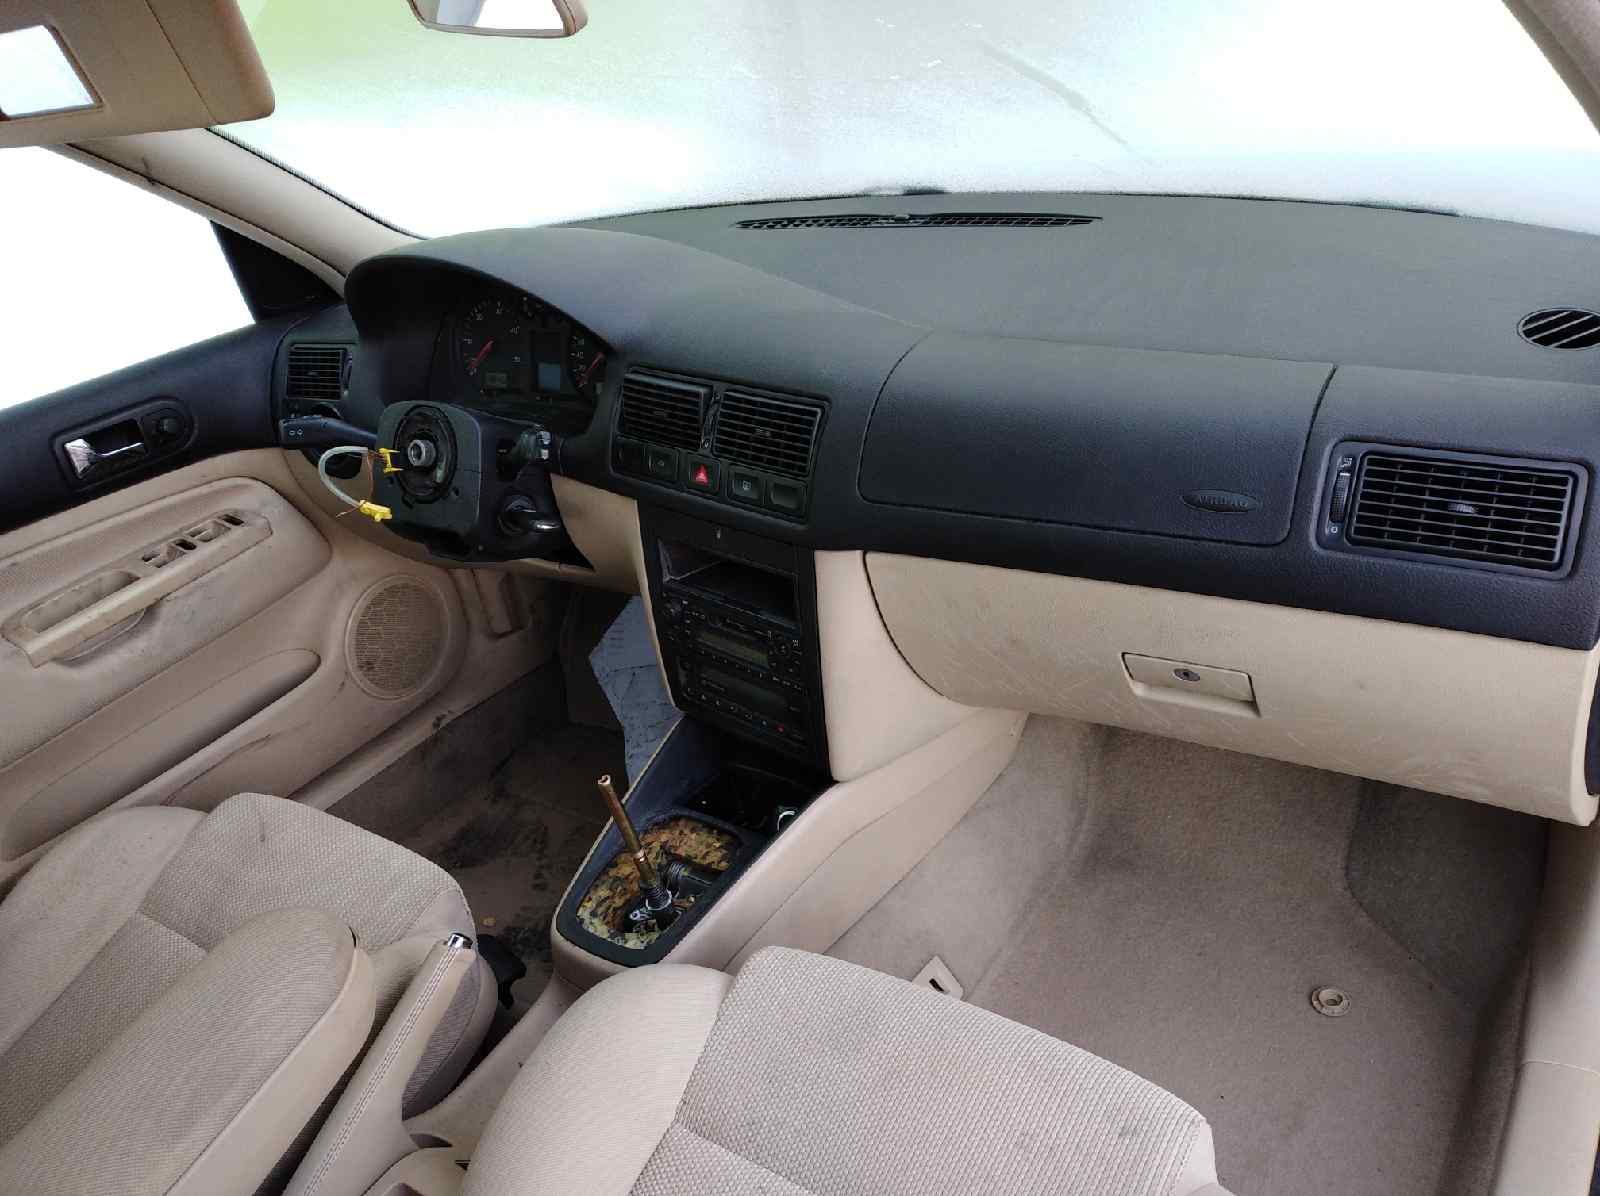 VOLKSWAGEN Golf 4 generation (1997-2006) Rear Right Door Window Control Motor 101434203 25287819